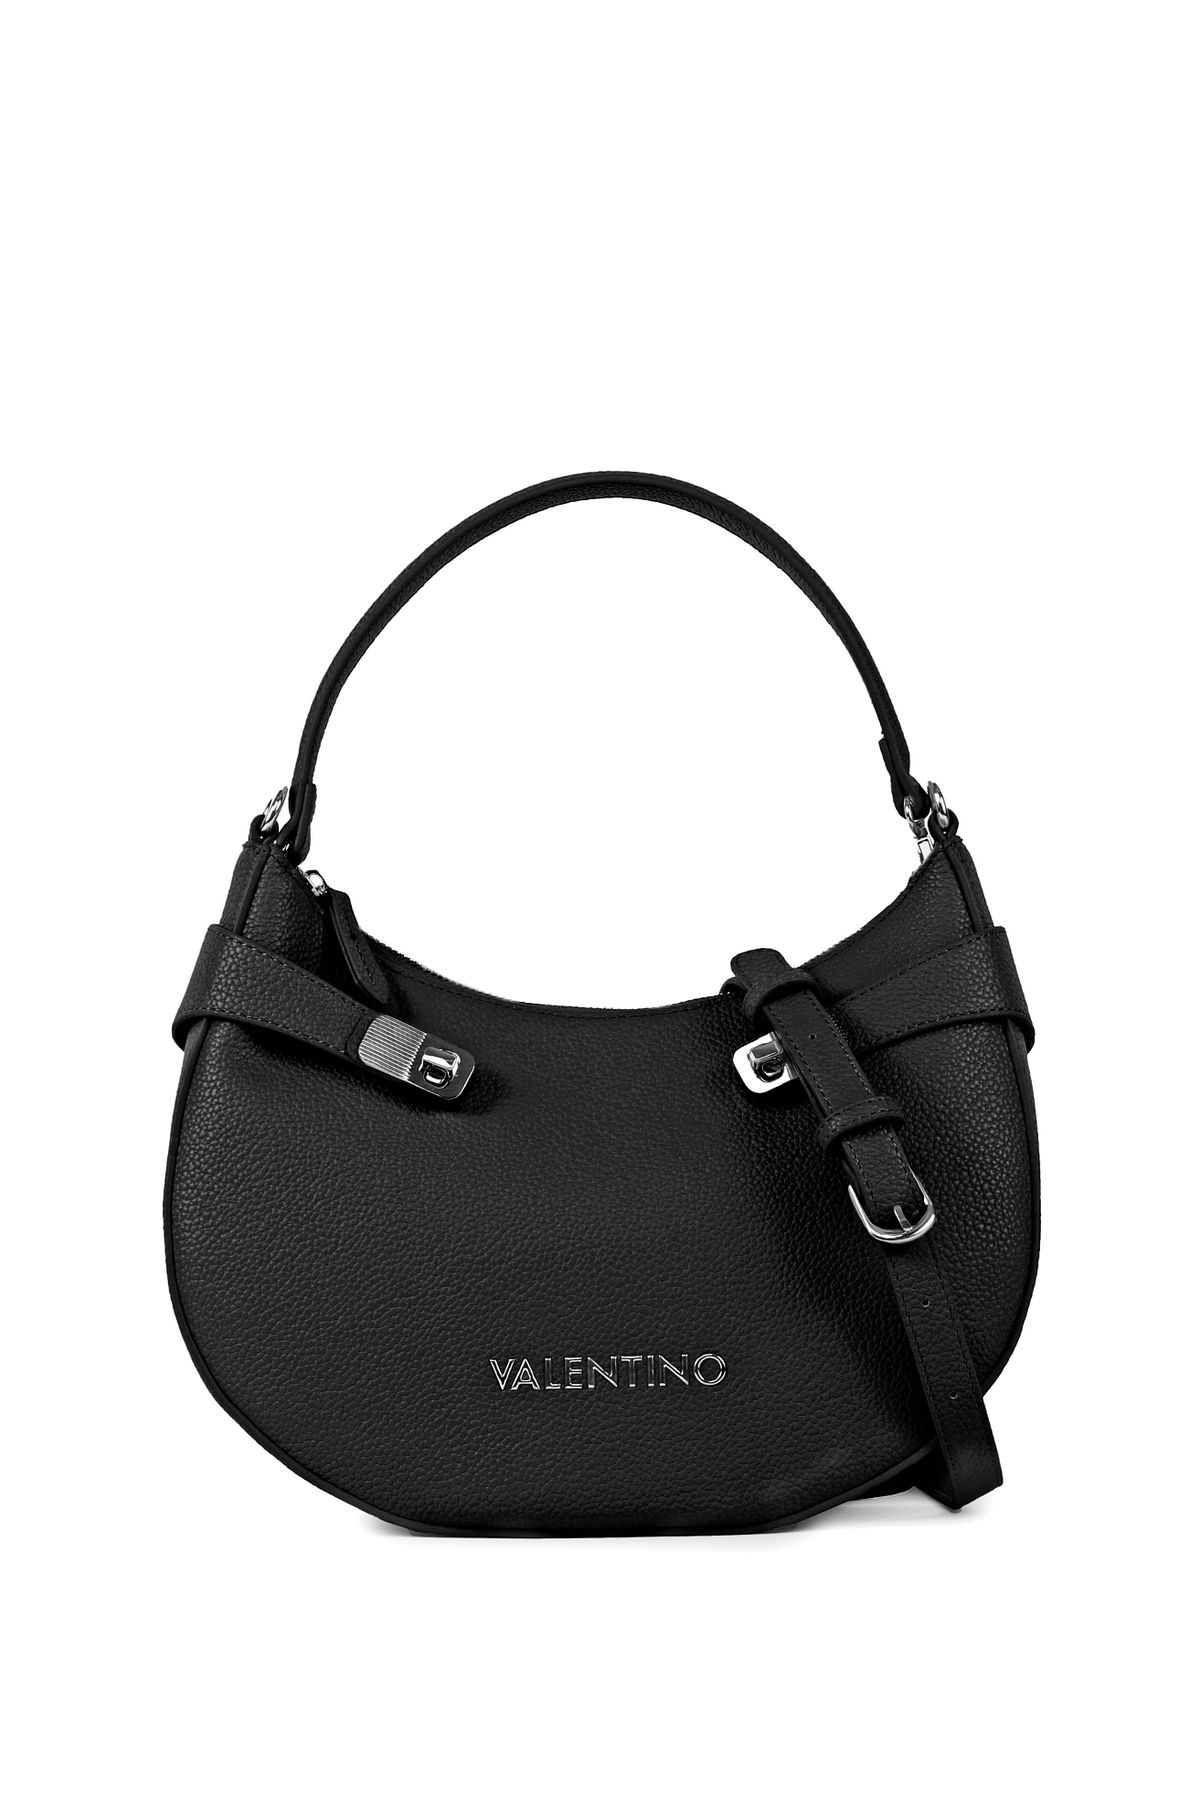 Valentino Siyah Kadın 10x29x24,5 cm Çapraz Çanta VBS7T903550